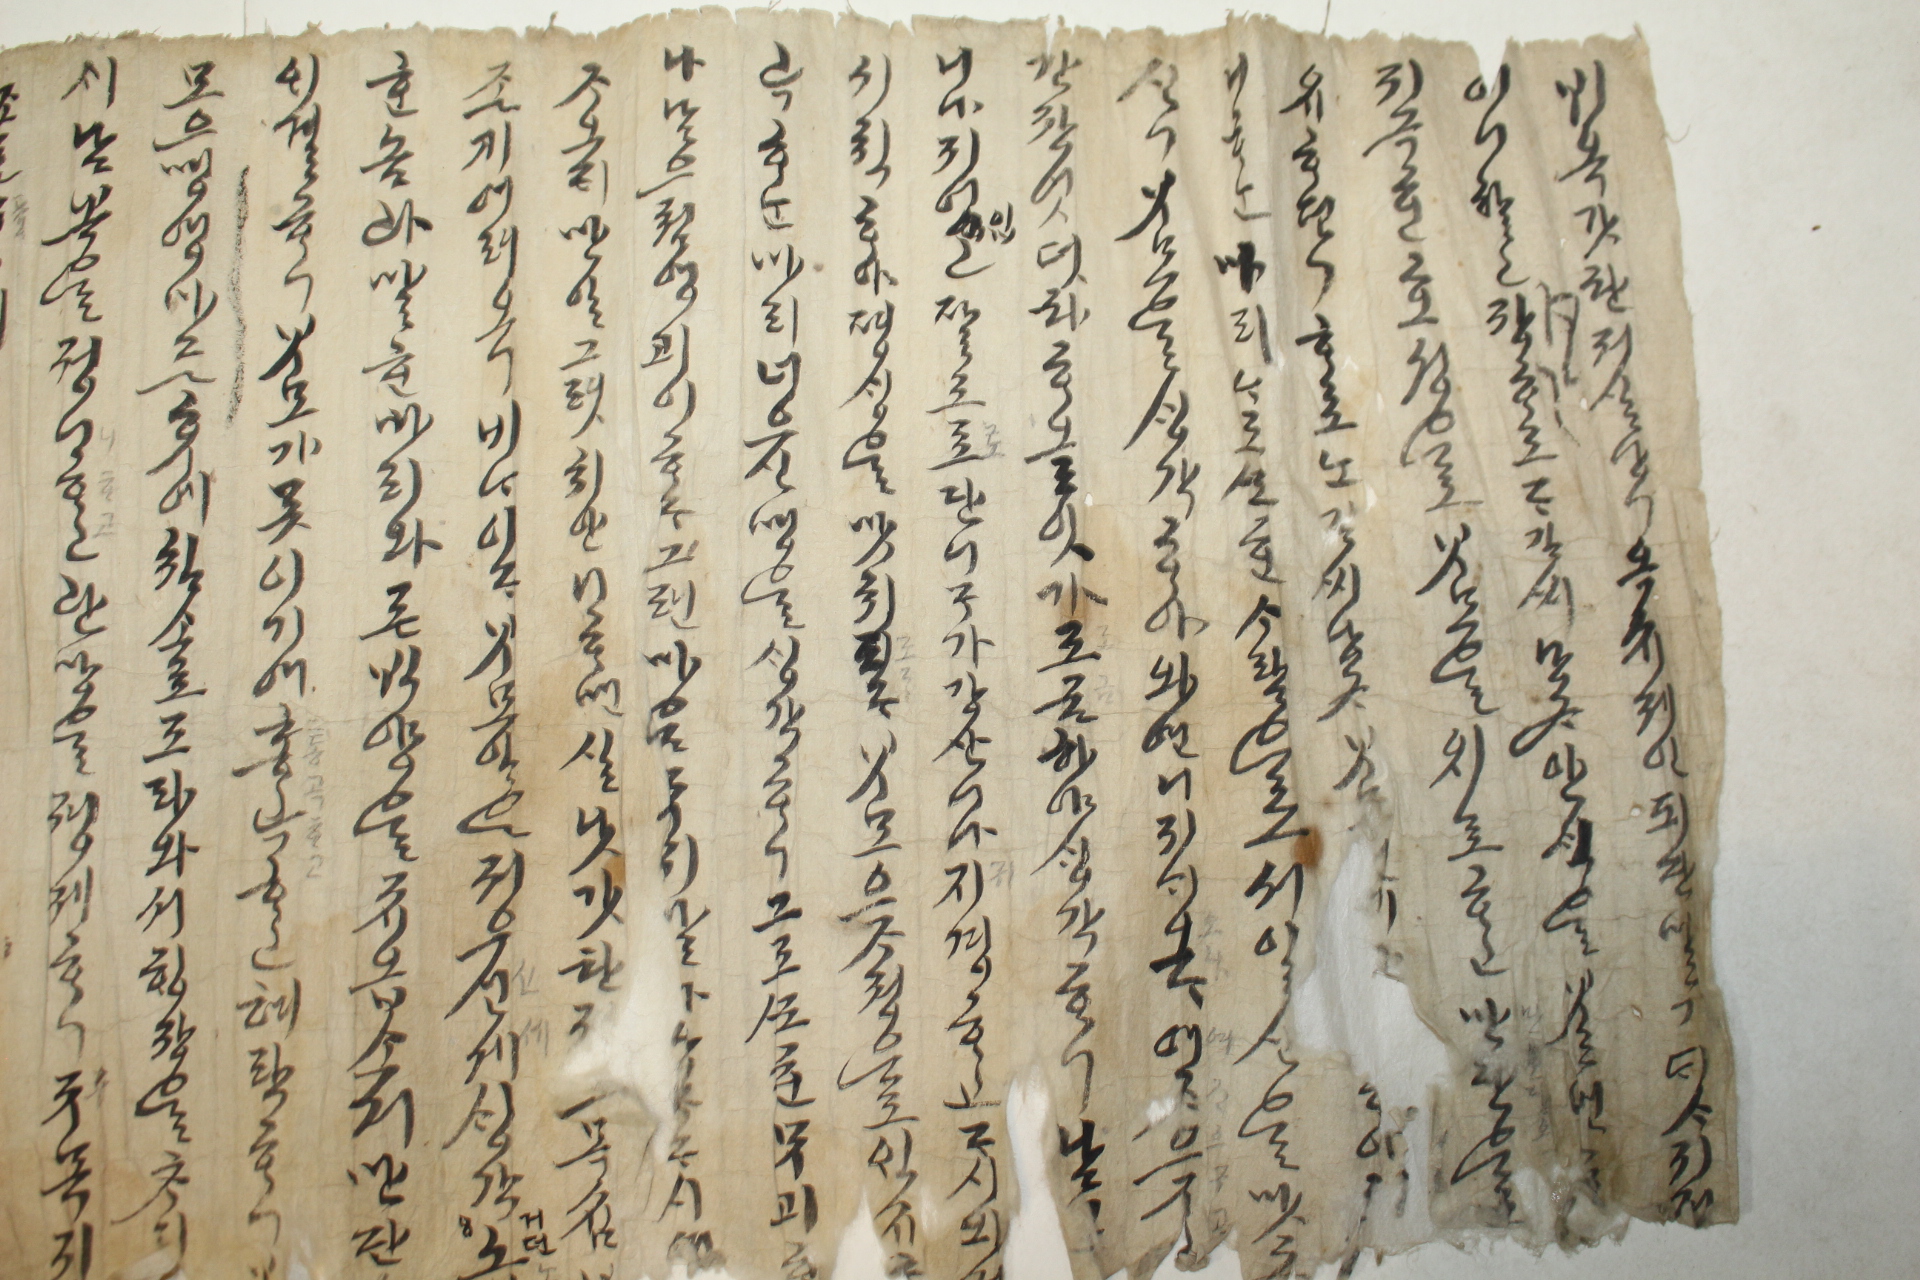 조선시대 한글언문 가사 두루마리 (2미터96센치)